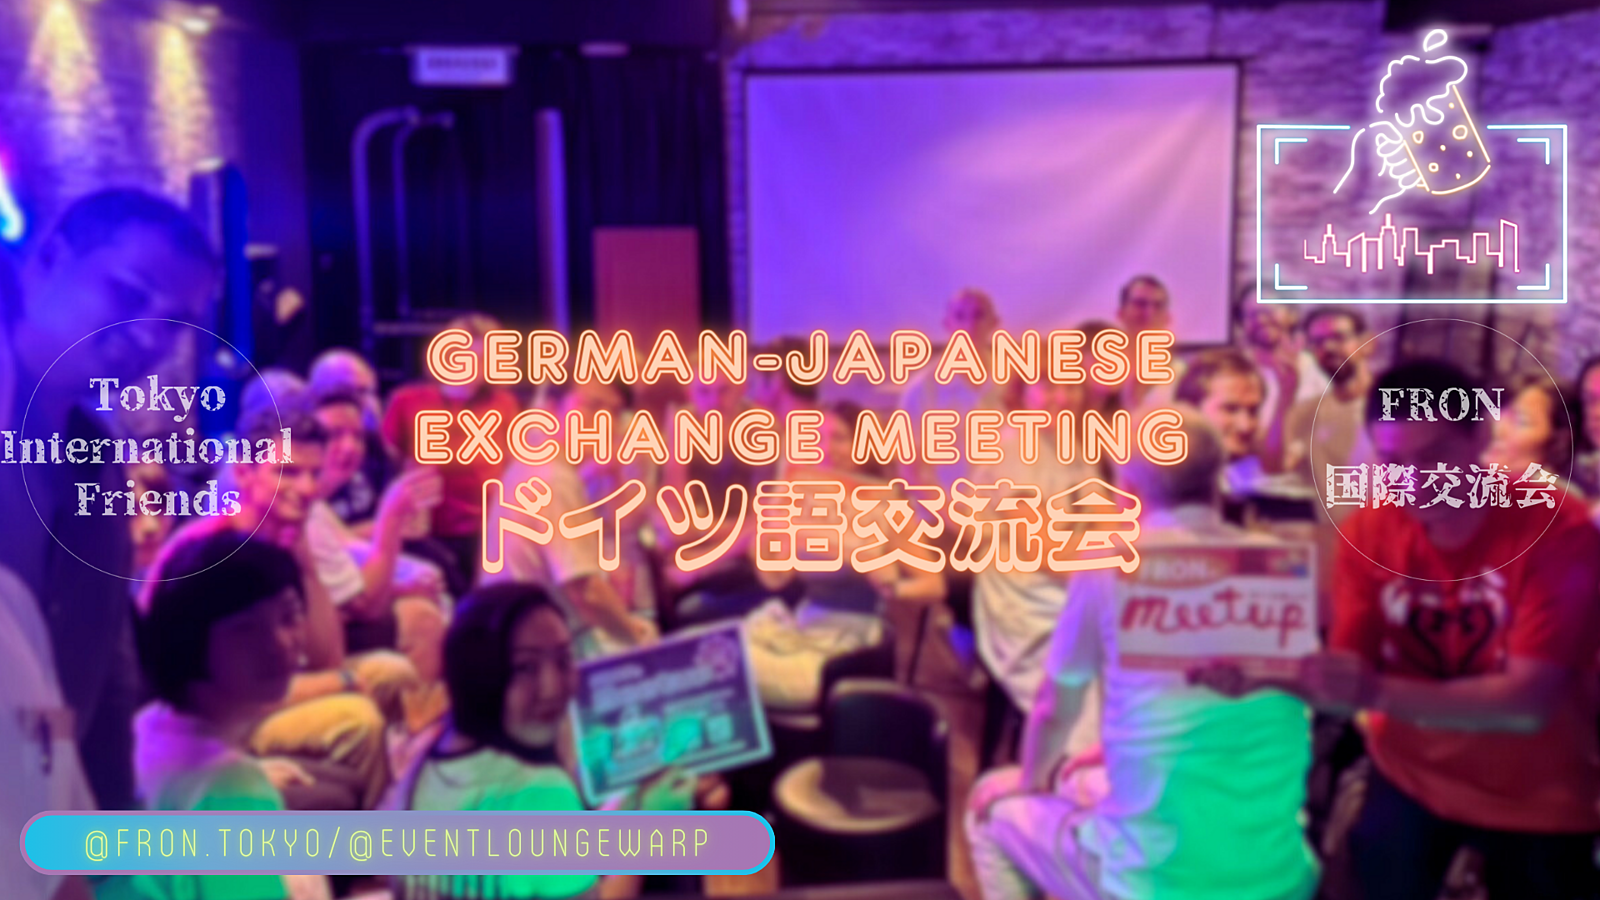 4/13(土)19:00~ ドイツ語交流会 🇩🇪 German-Japanese Exchange Meeting☆Samstag, 13. April♪